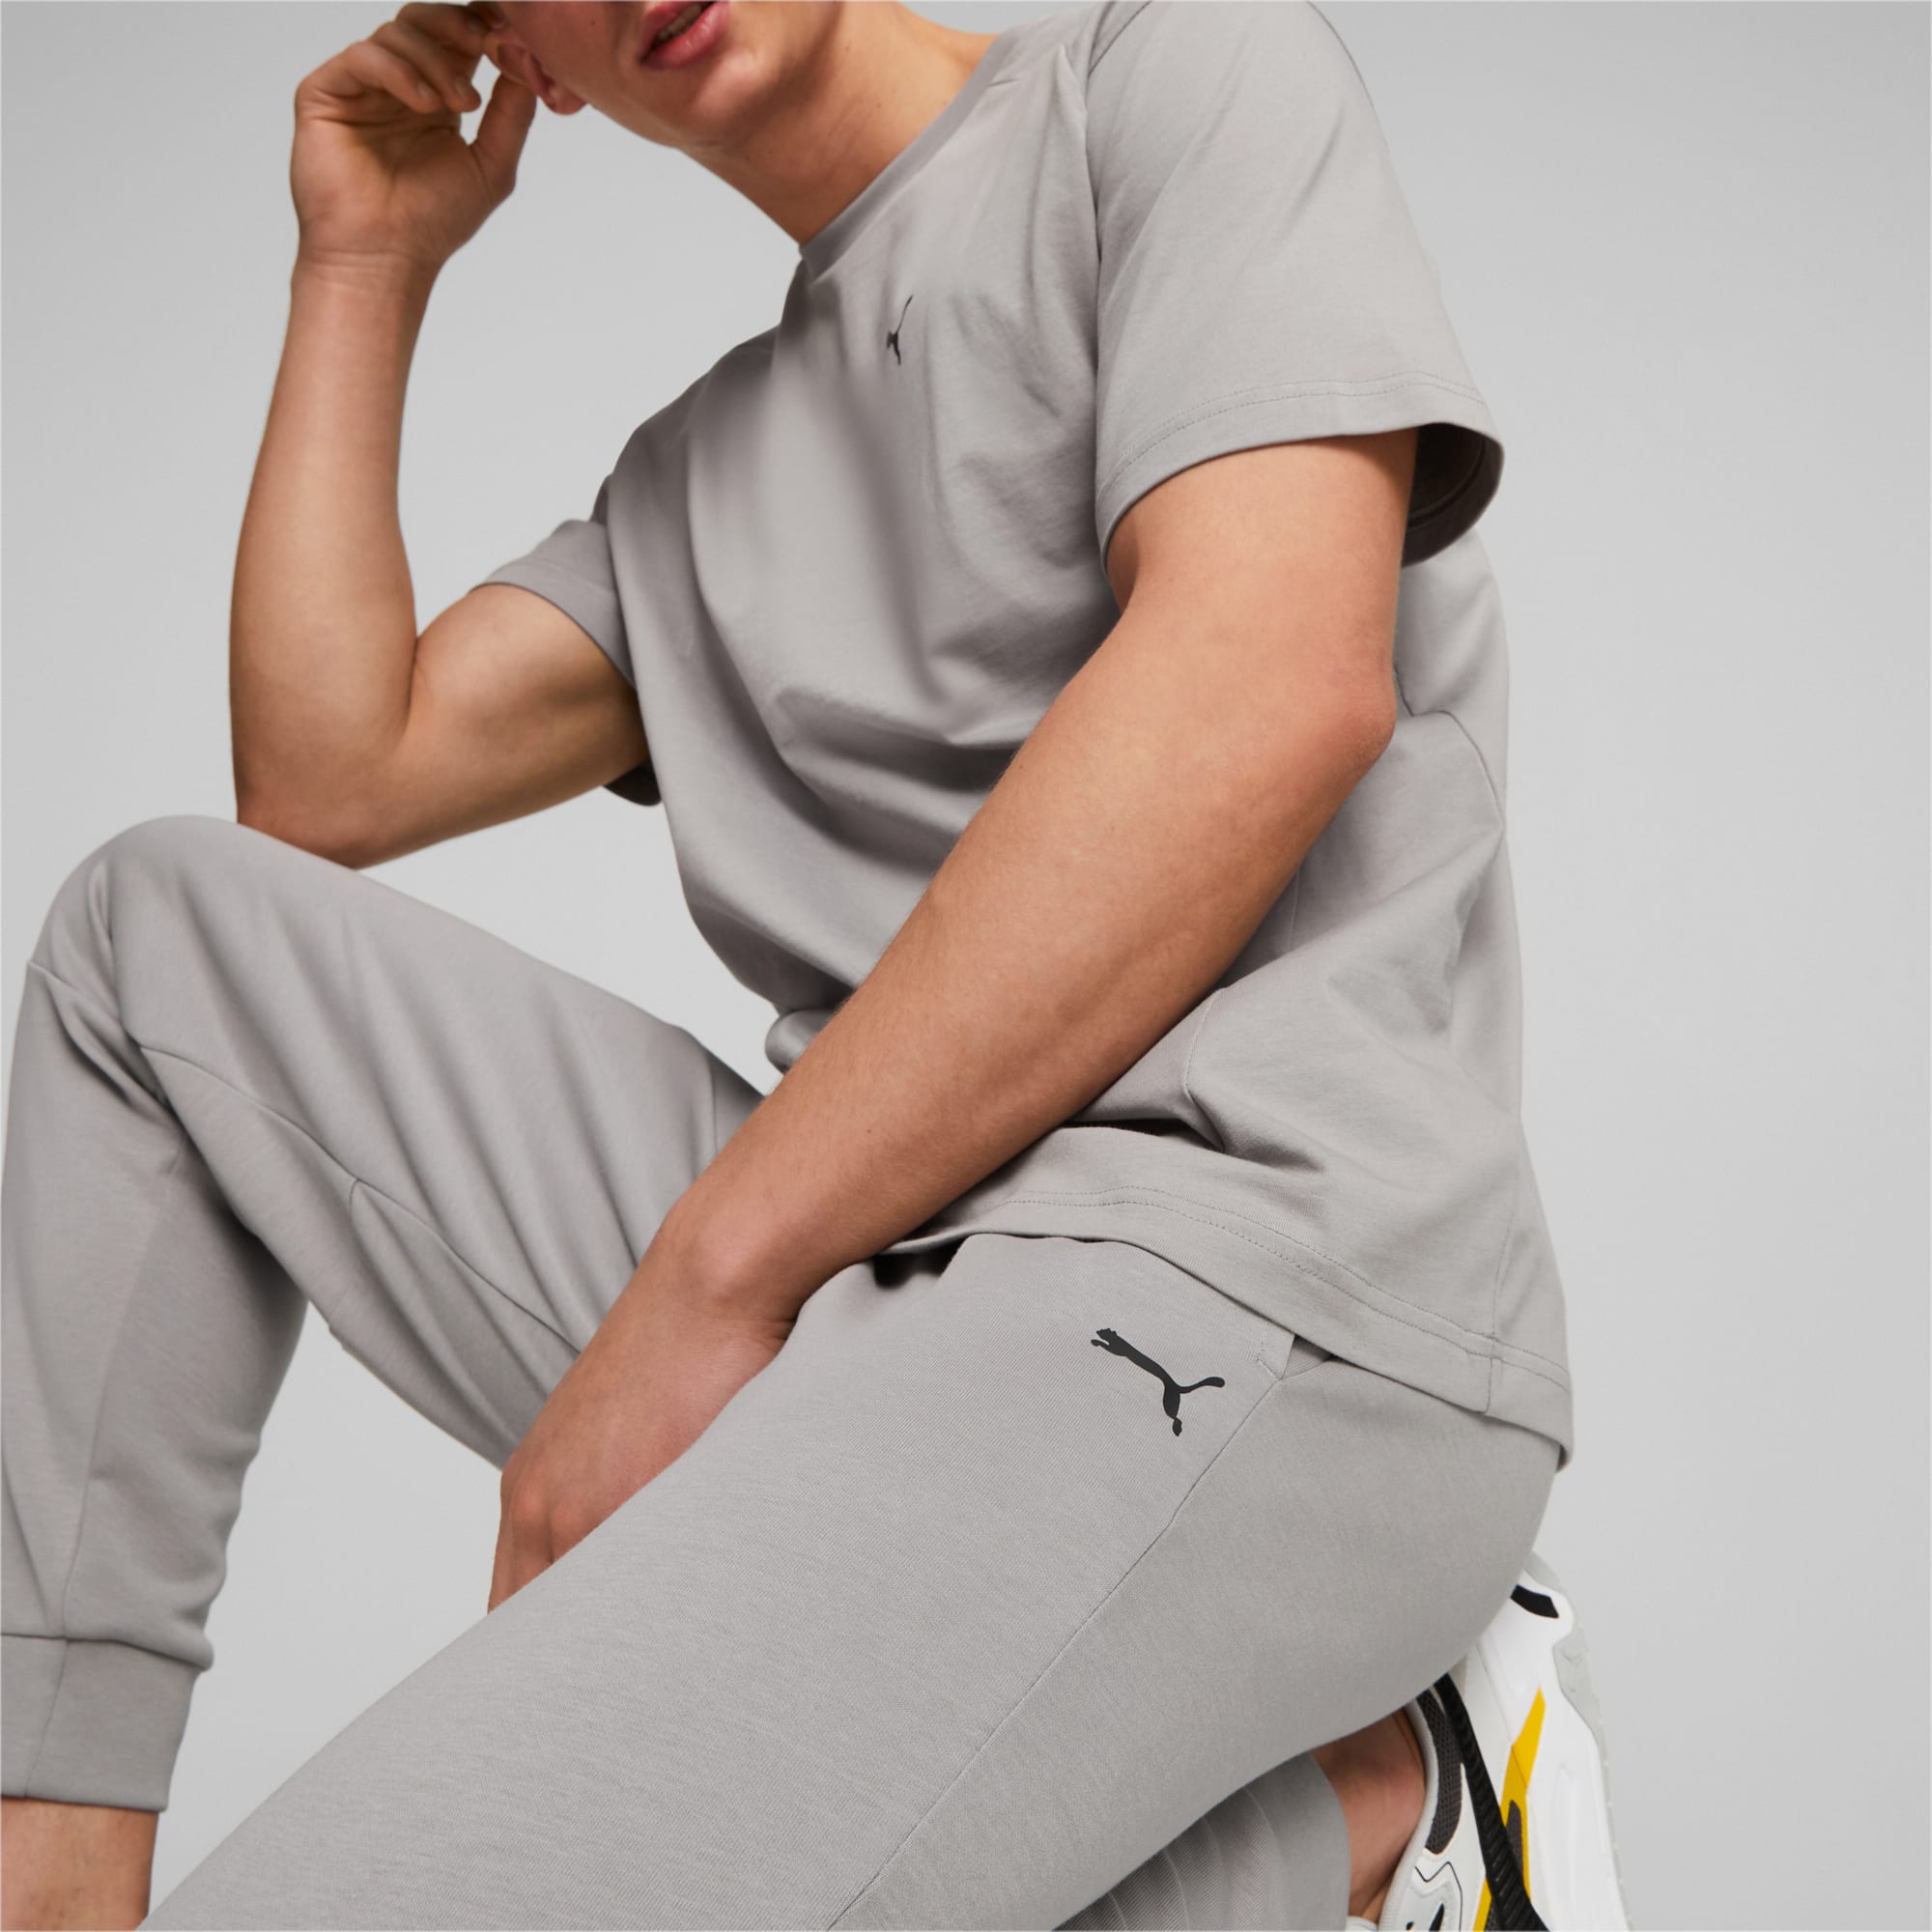 PUMA Rad/Cal Pants Men, Concrete Grey